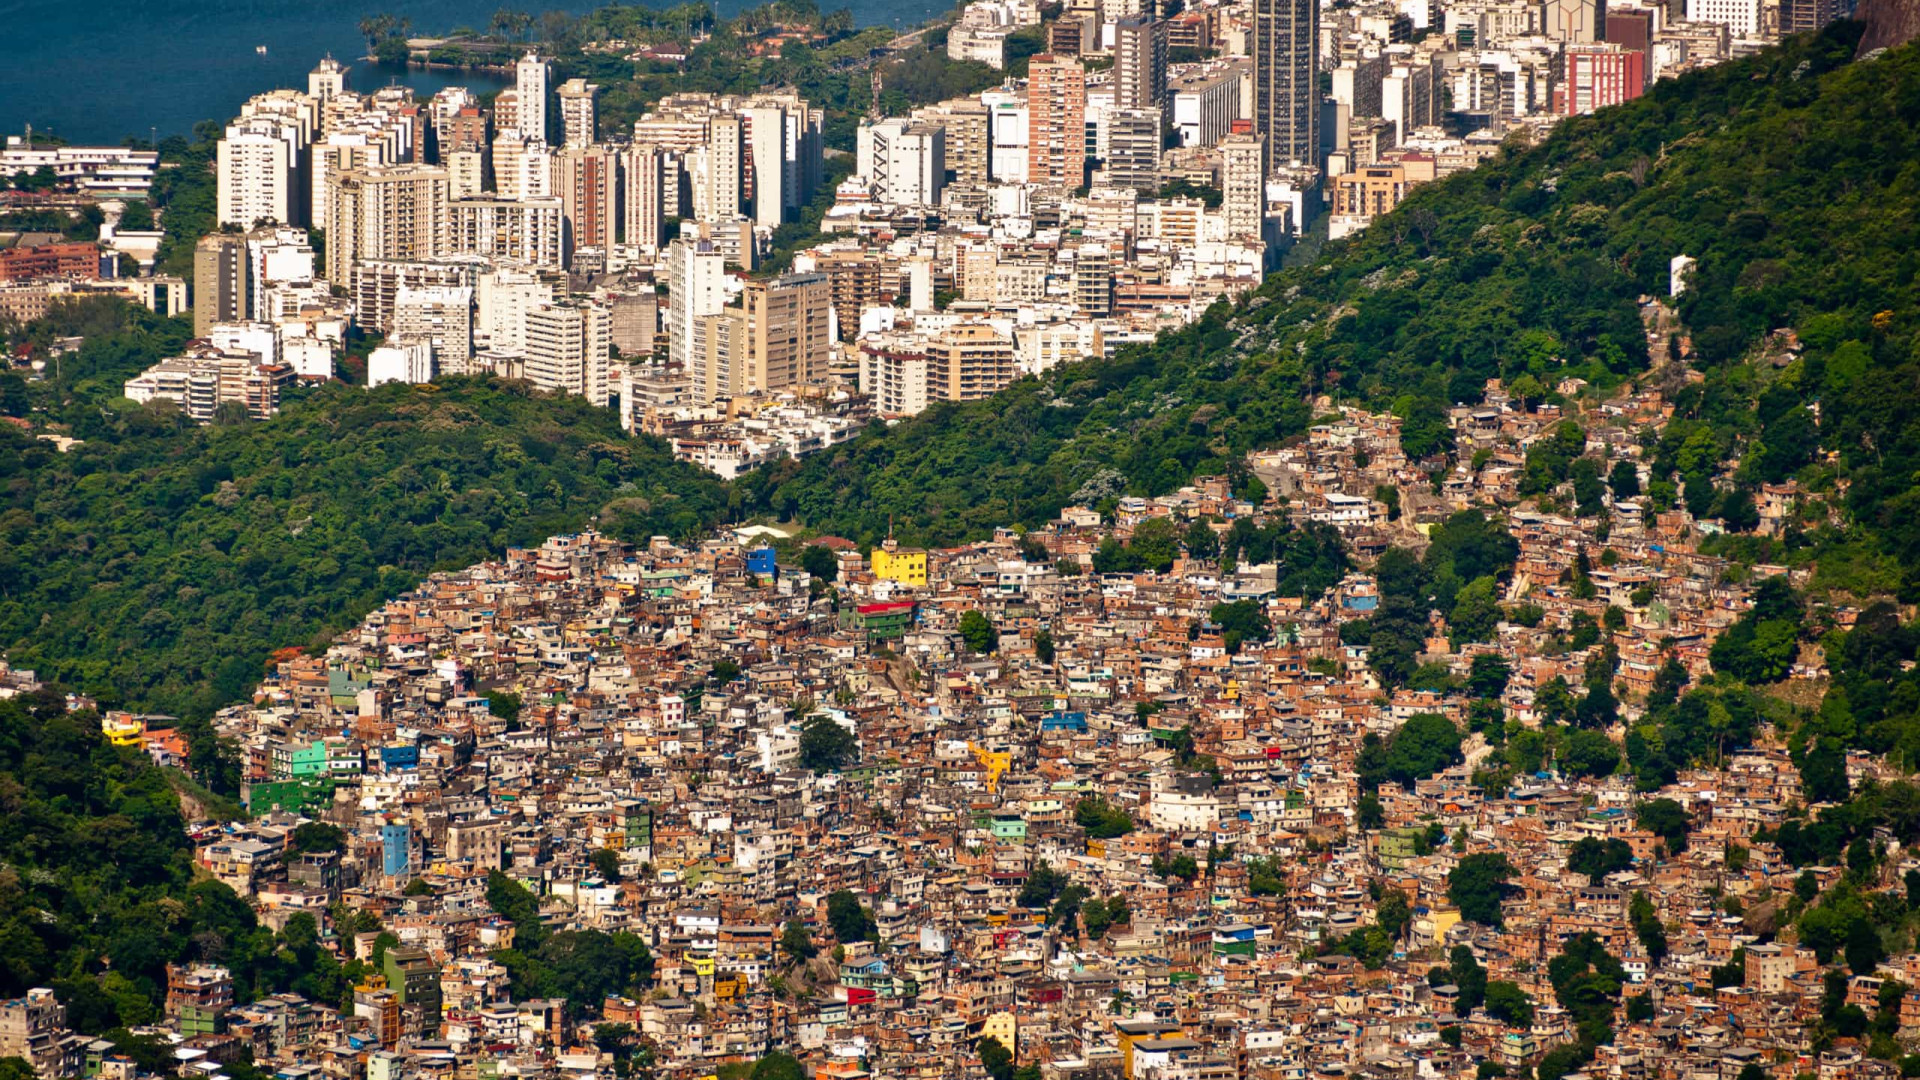 Milicianos cobram taxa para criação de porcos em favela do Rio, dizem moradores